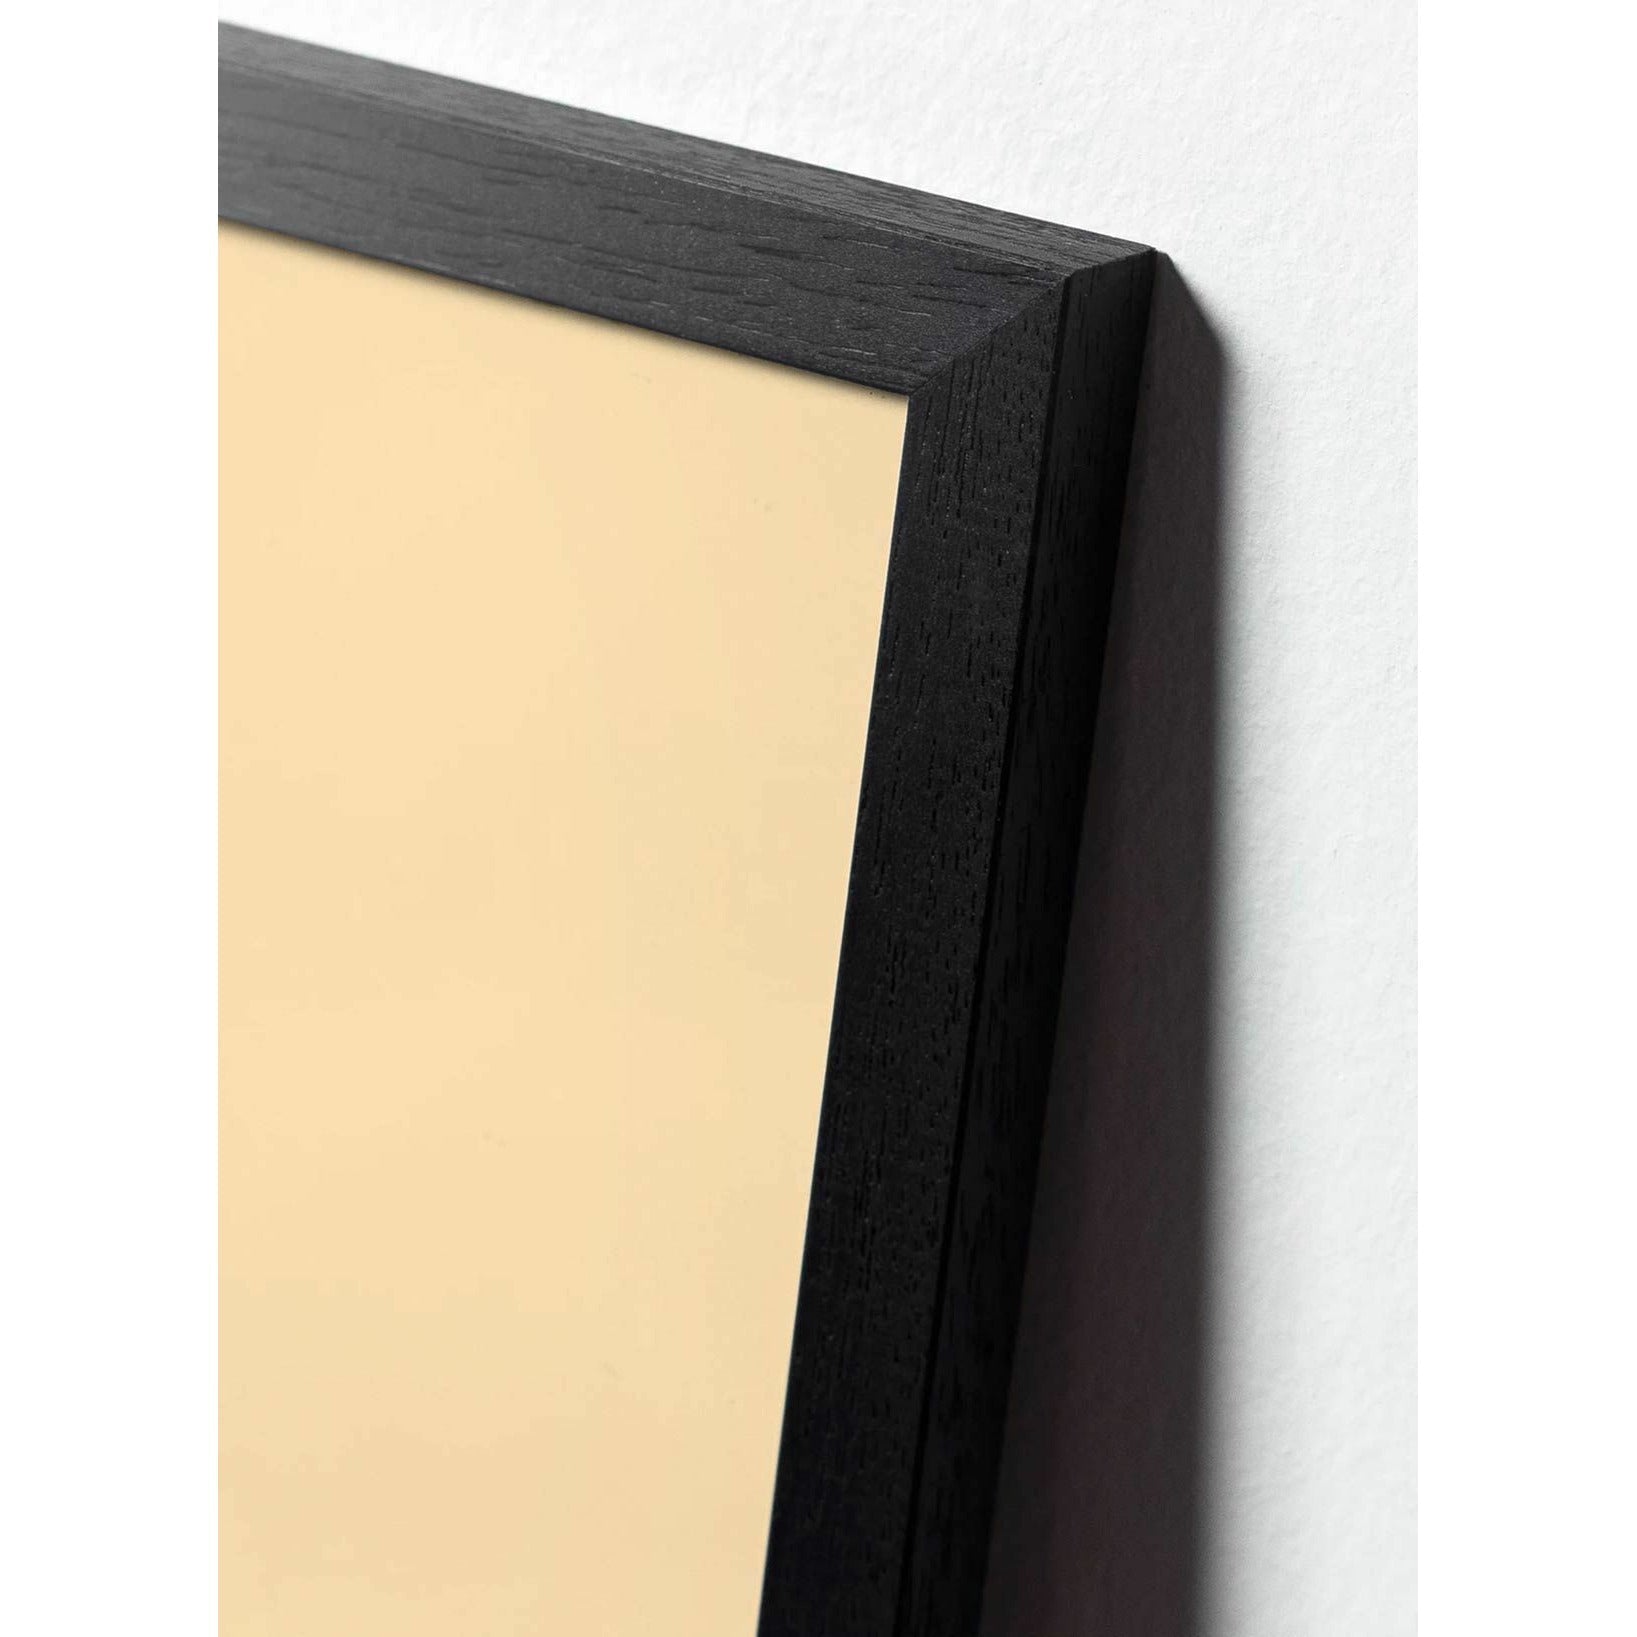 Brainchild Affiche d'icône de conception de fourmi, cadre en bois laqué noir 30x40 cm, gris